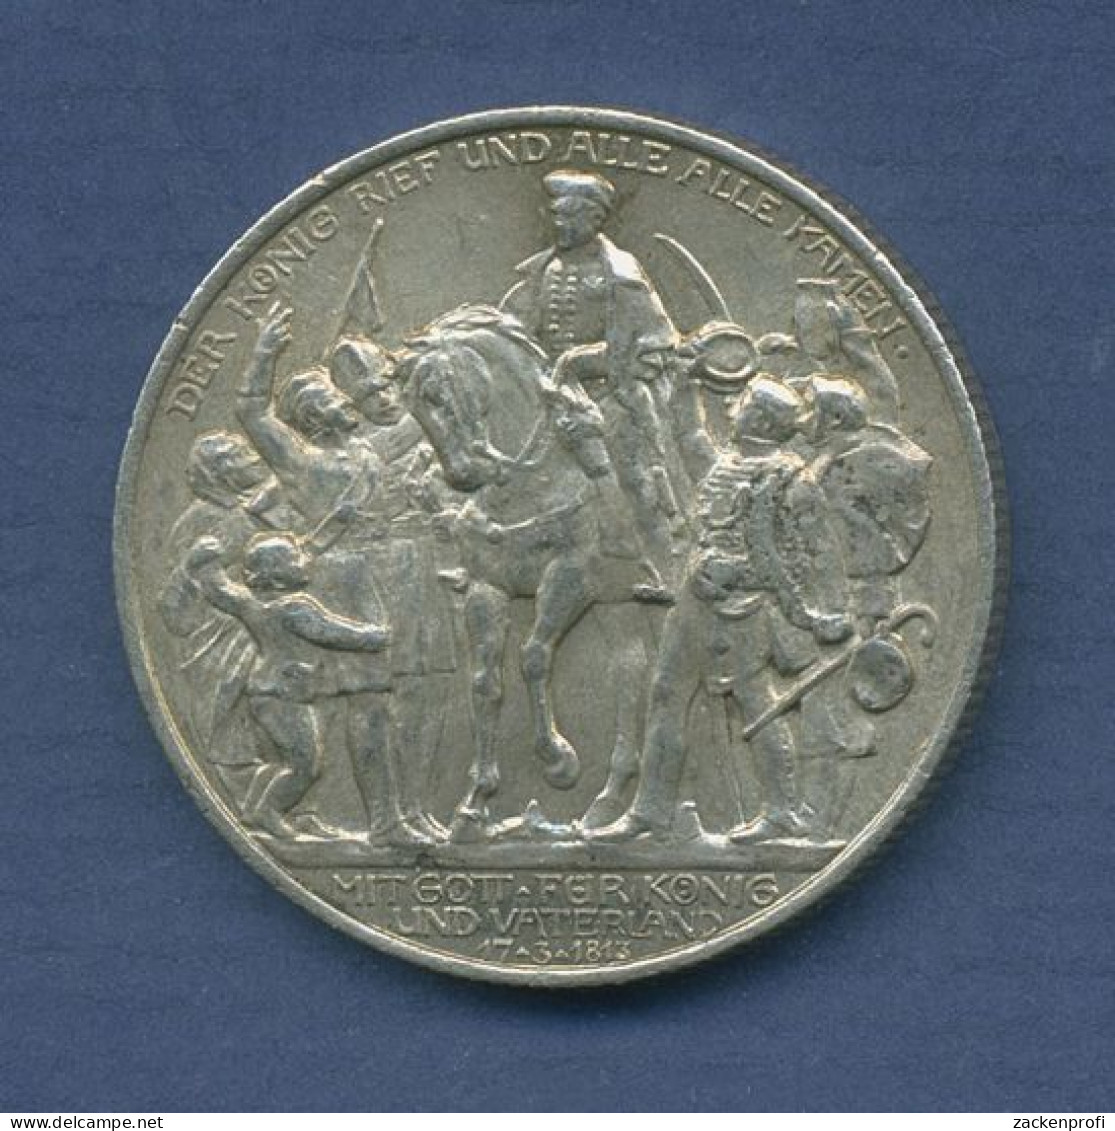 Preußen 2 Mark 1913 A, 100 Jahre Befreiungskriege, J 109 Vz (m6573) - 2, 3 & 5 Mark Silber